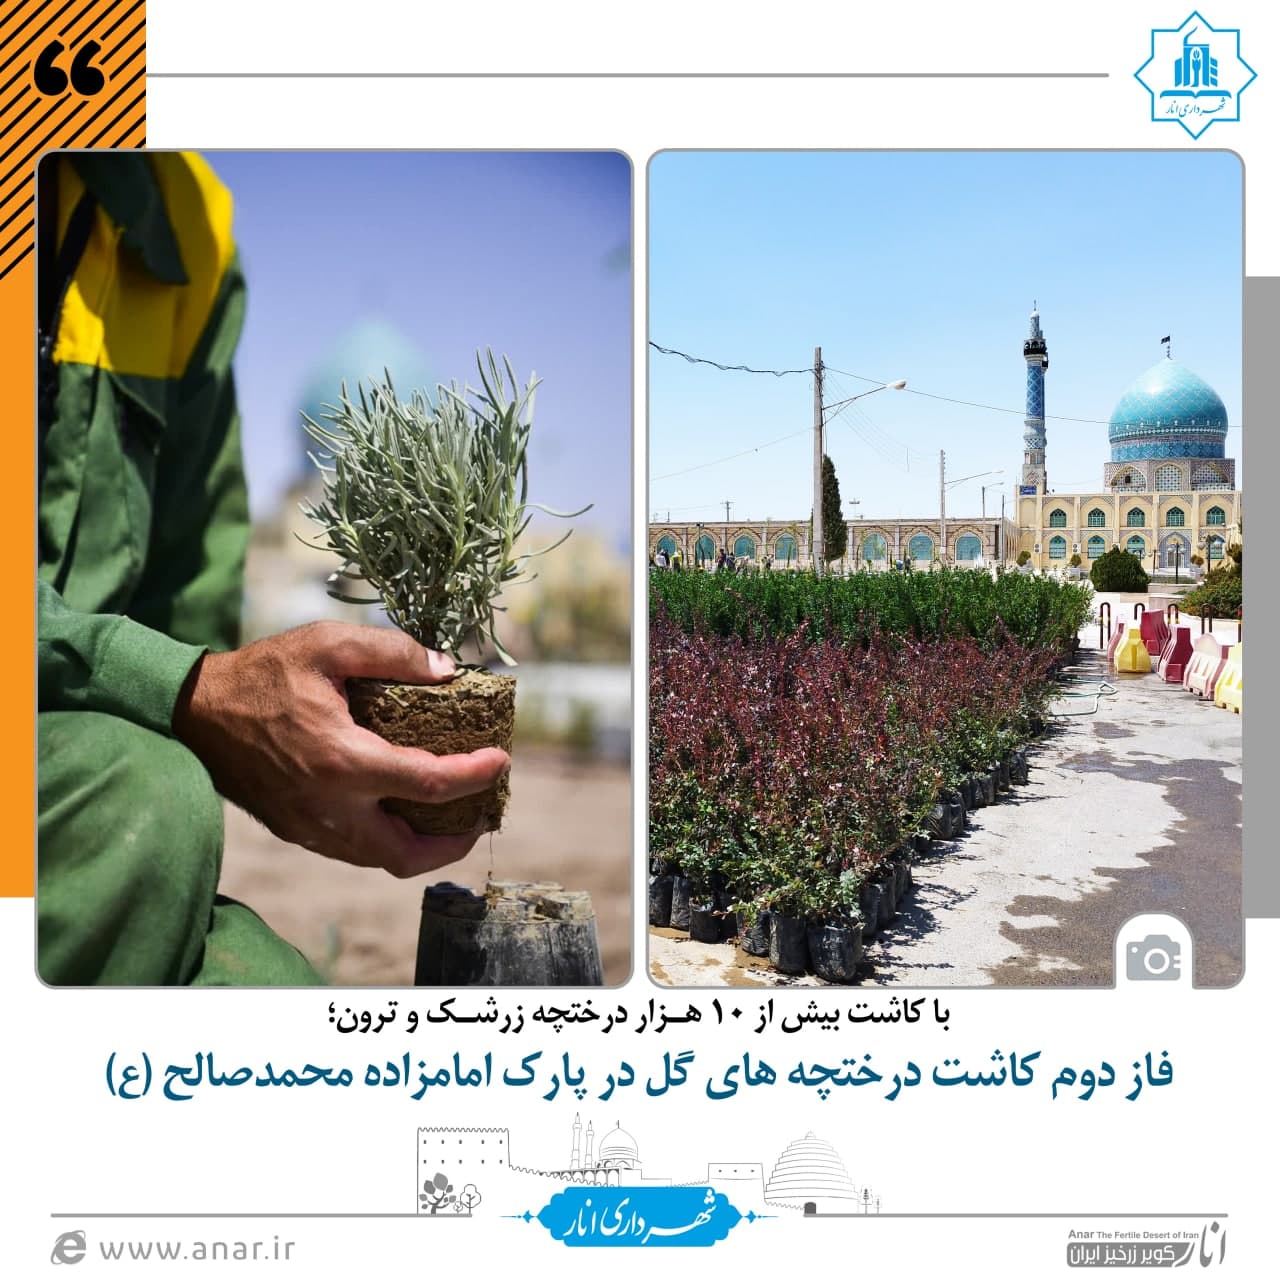 فاز دوم کاشت درختچه های گل در پارک امامزاده محمدصالح (ع)